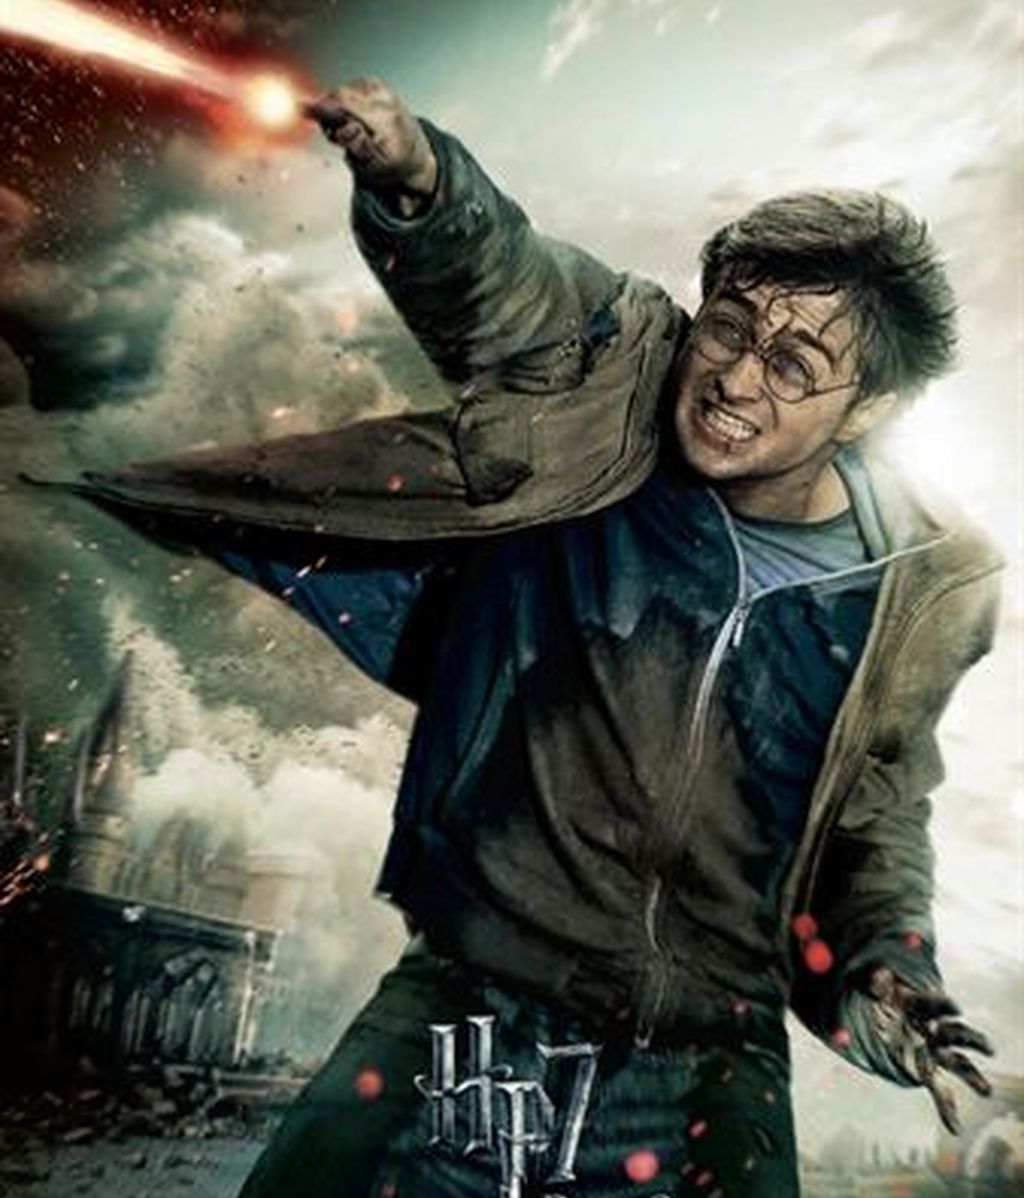 Once carteles y una película, la de Harry Potter